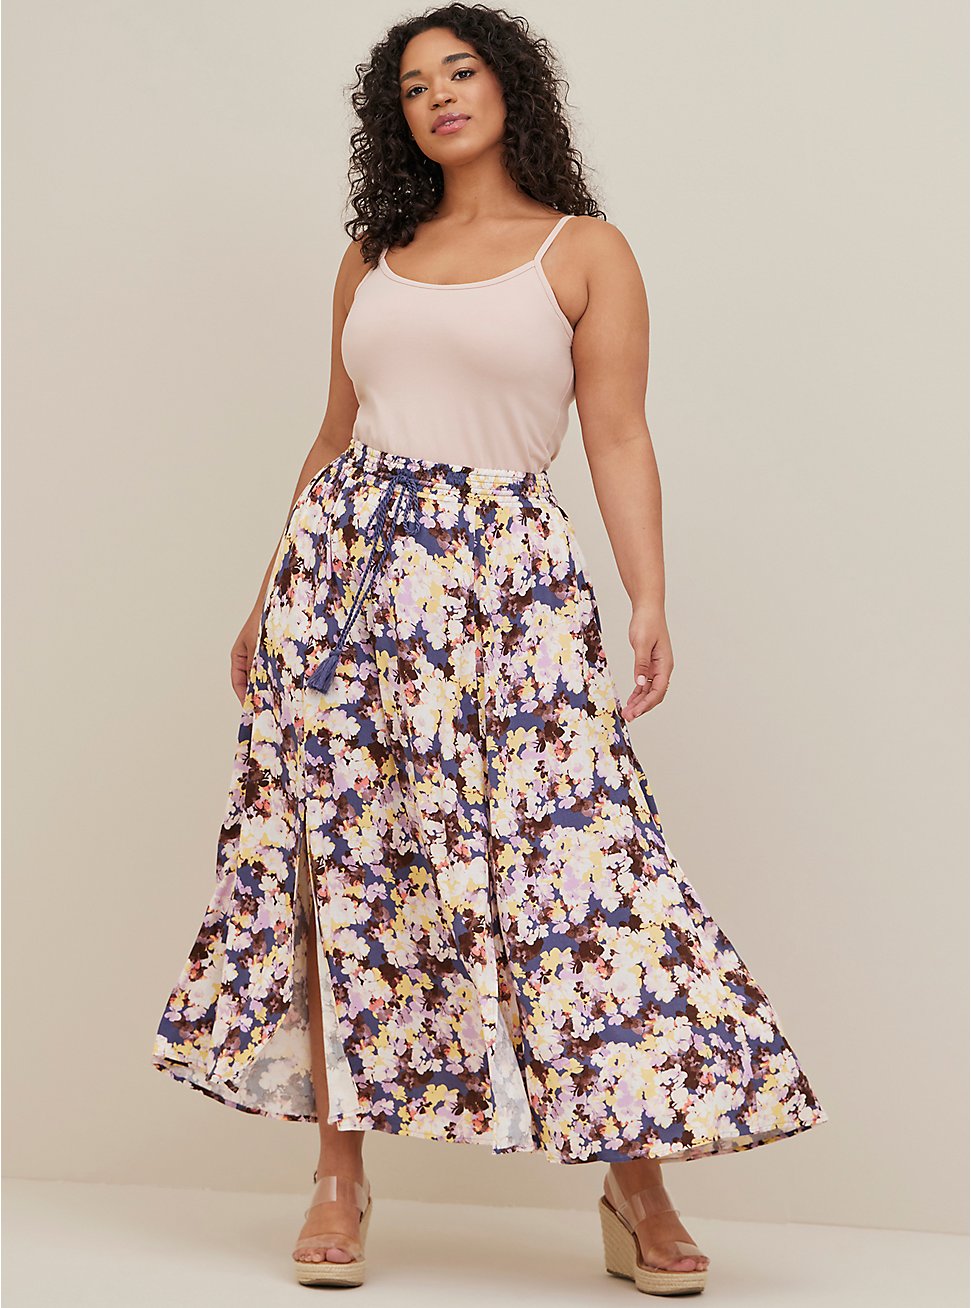 Screen Printed Cotton Skirt Free Size Skirt Maxi Dress Floral Print Long Skirt Girl's Skirt Indian Maxi Skirt Beach Wear Skirt